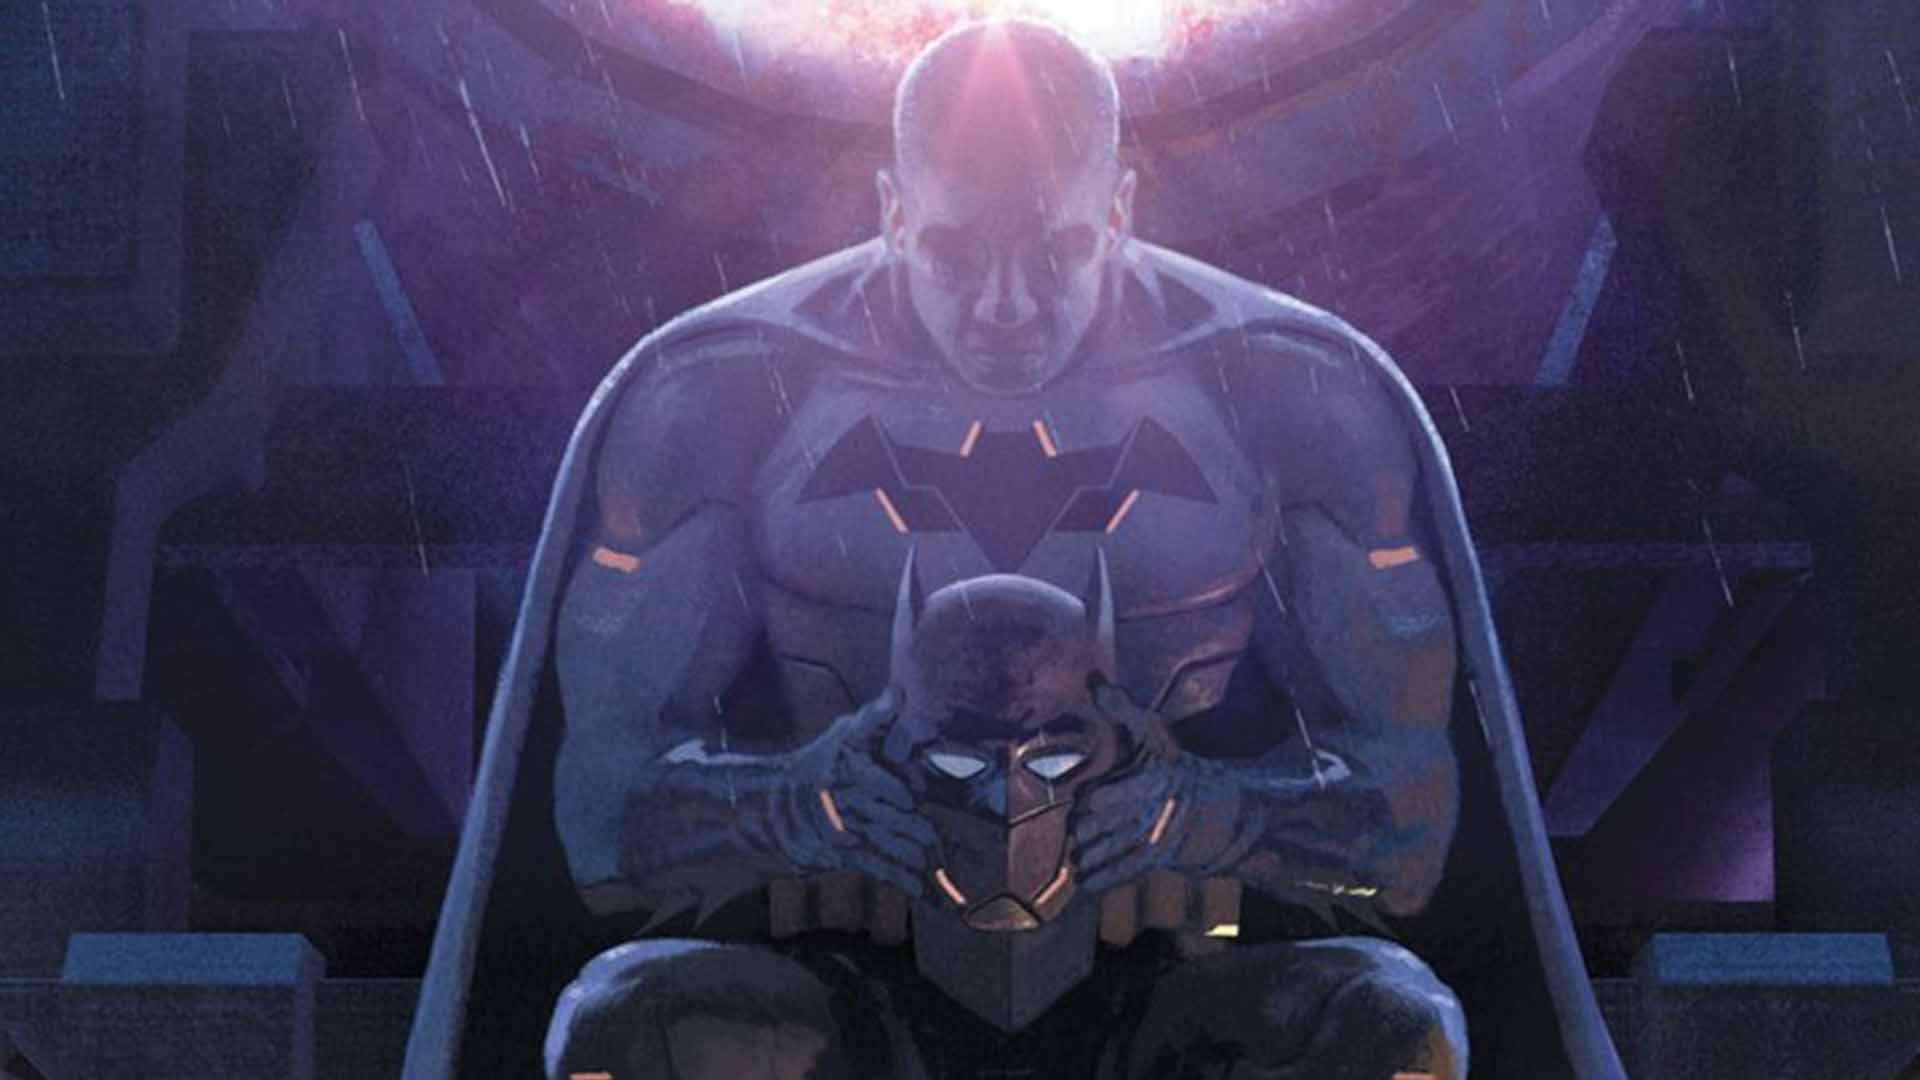 دی سی کامیکس سری کتاب The Next Batman: Second Son را معرفی کرد